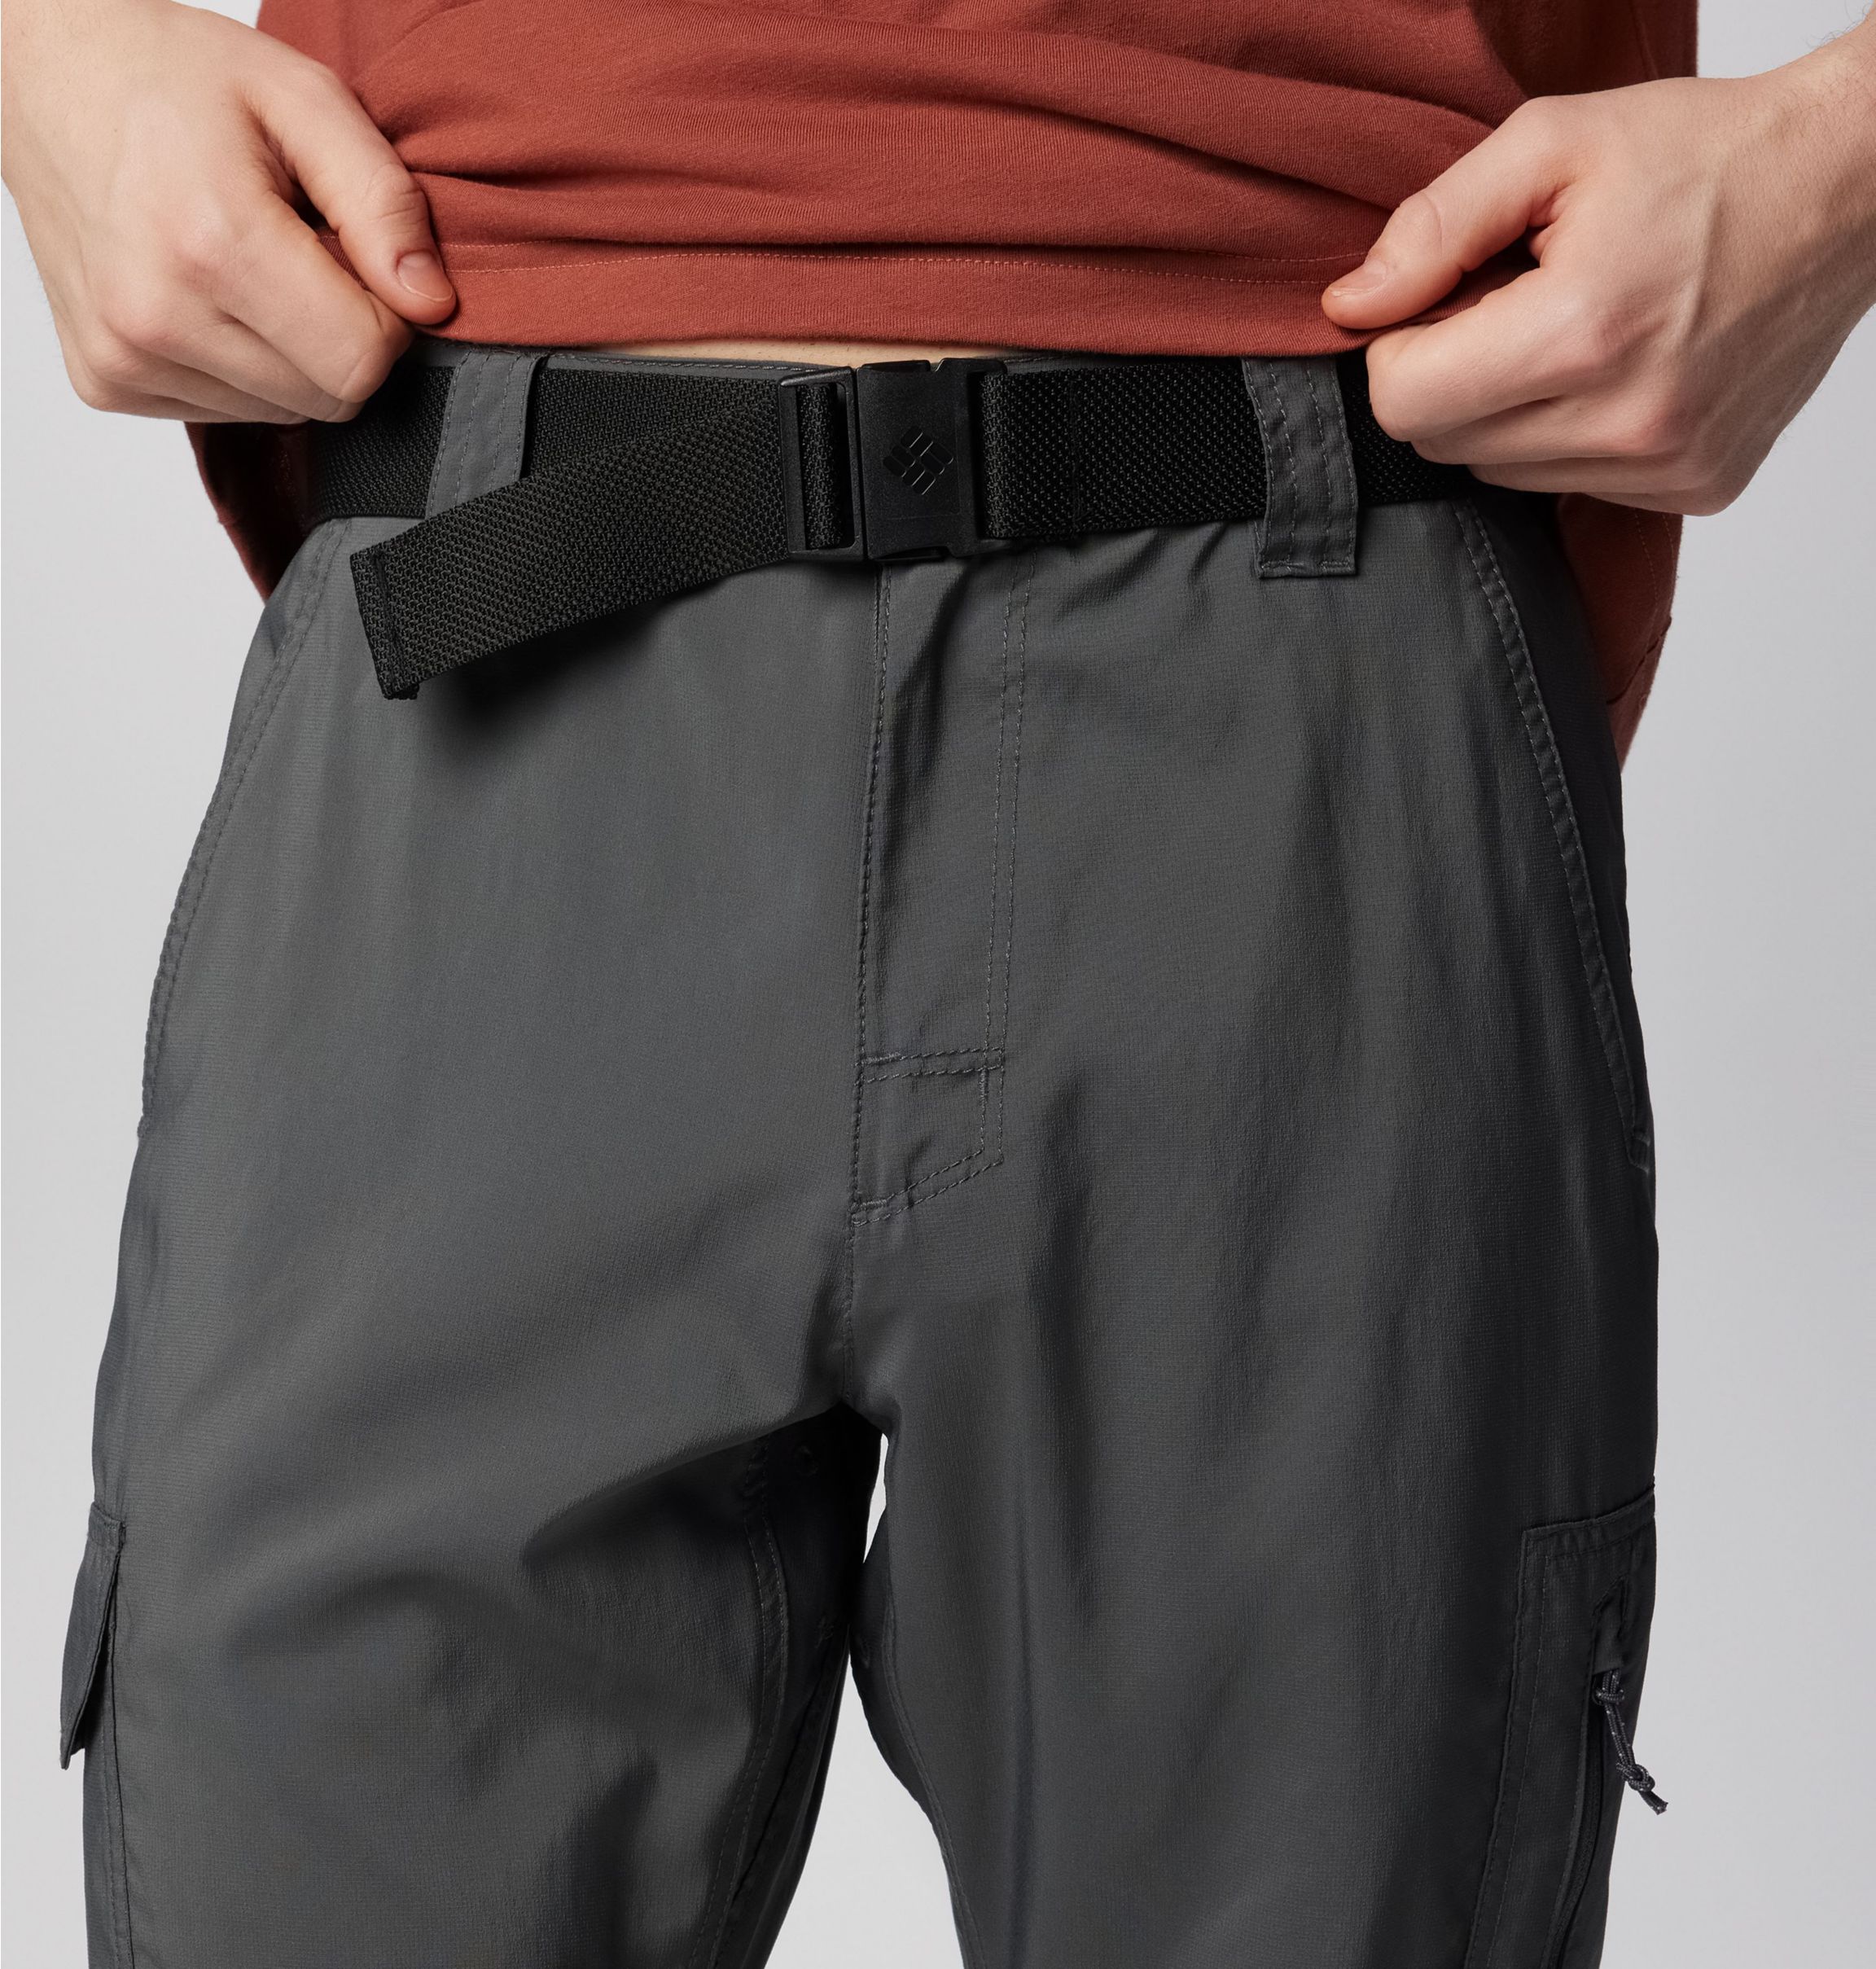 Columbia Men's Silver Ridge Utility Pants - Size 38 - Black